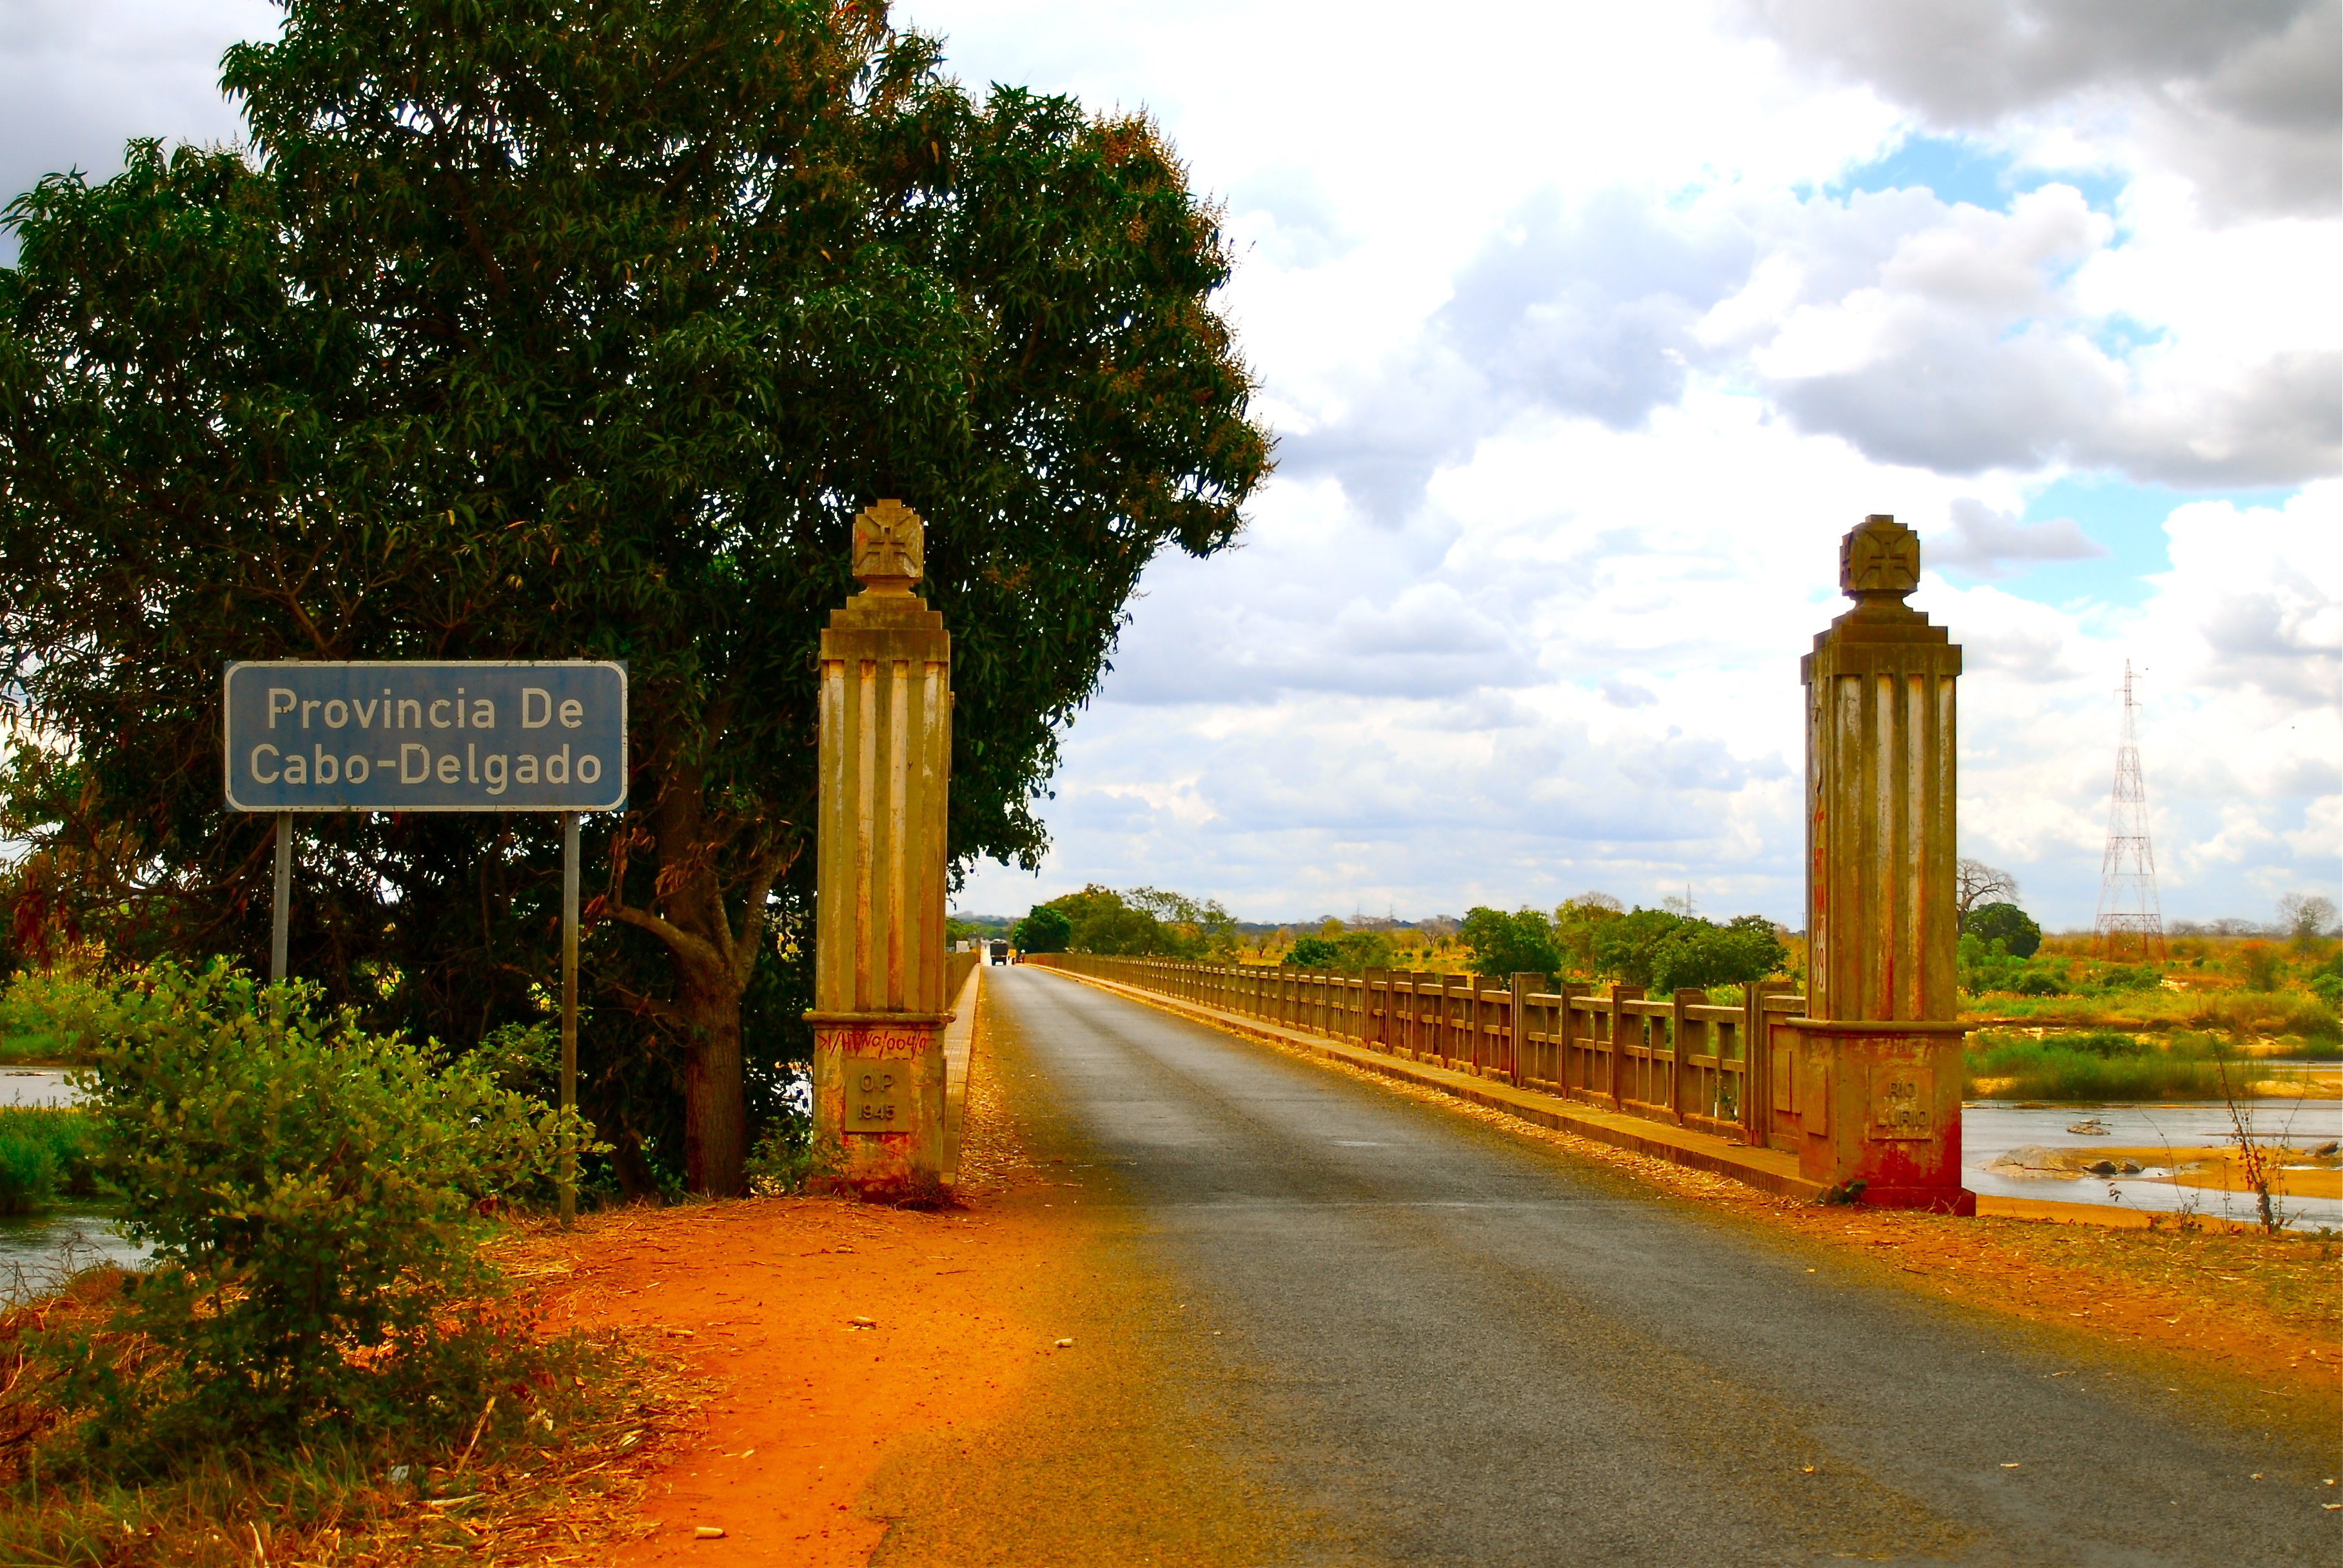 Le pont marquant l'entrée de la province de Cabo Delgado, marqué par deux piliers en pierre de part et d'autre de la route.